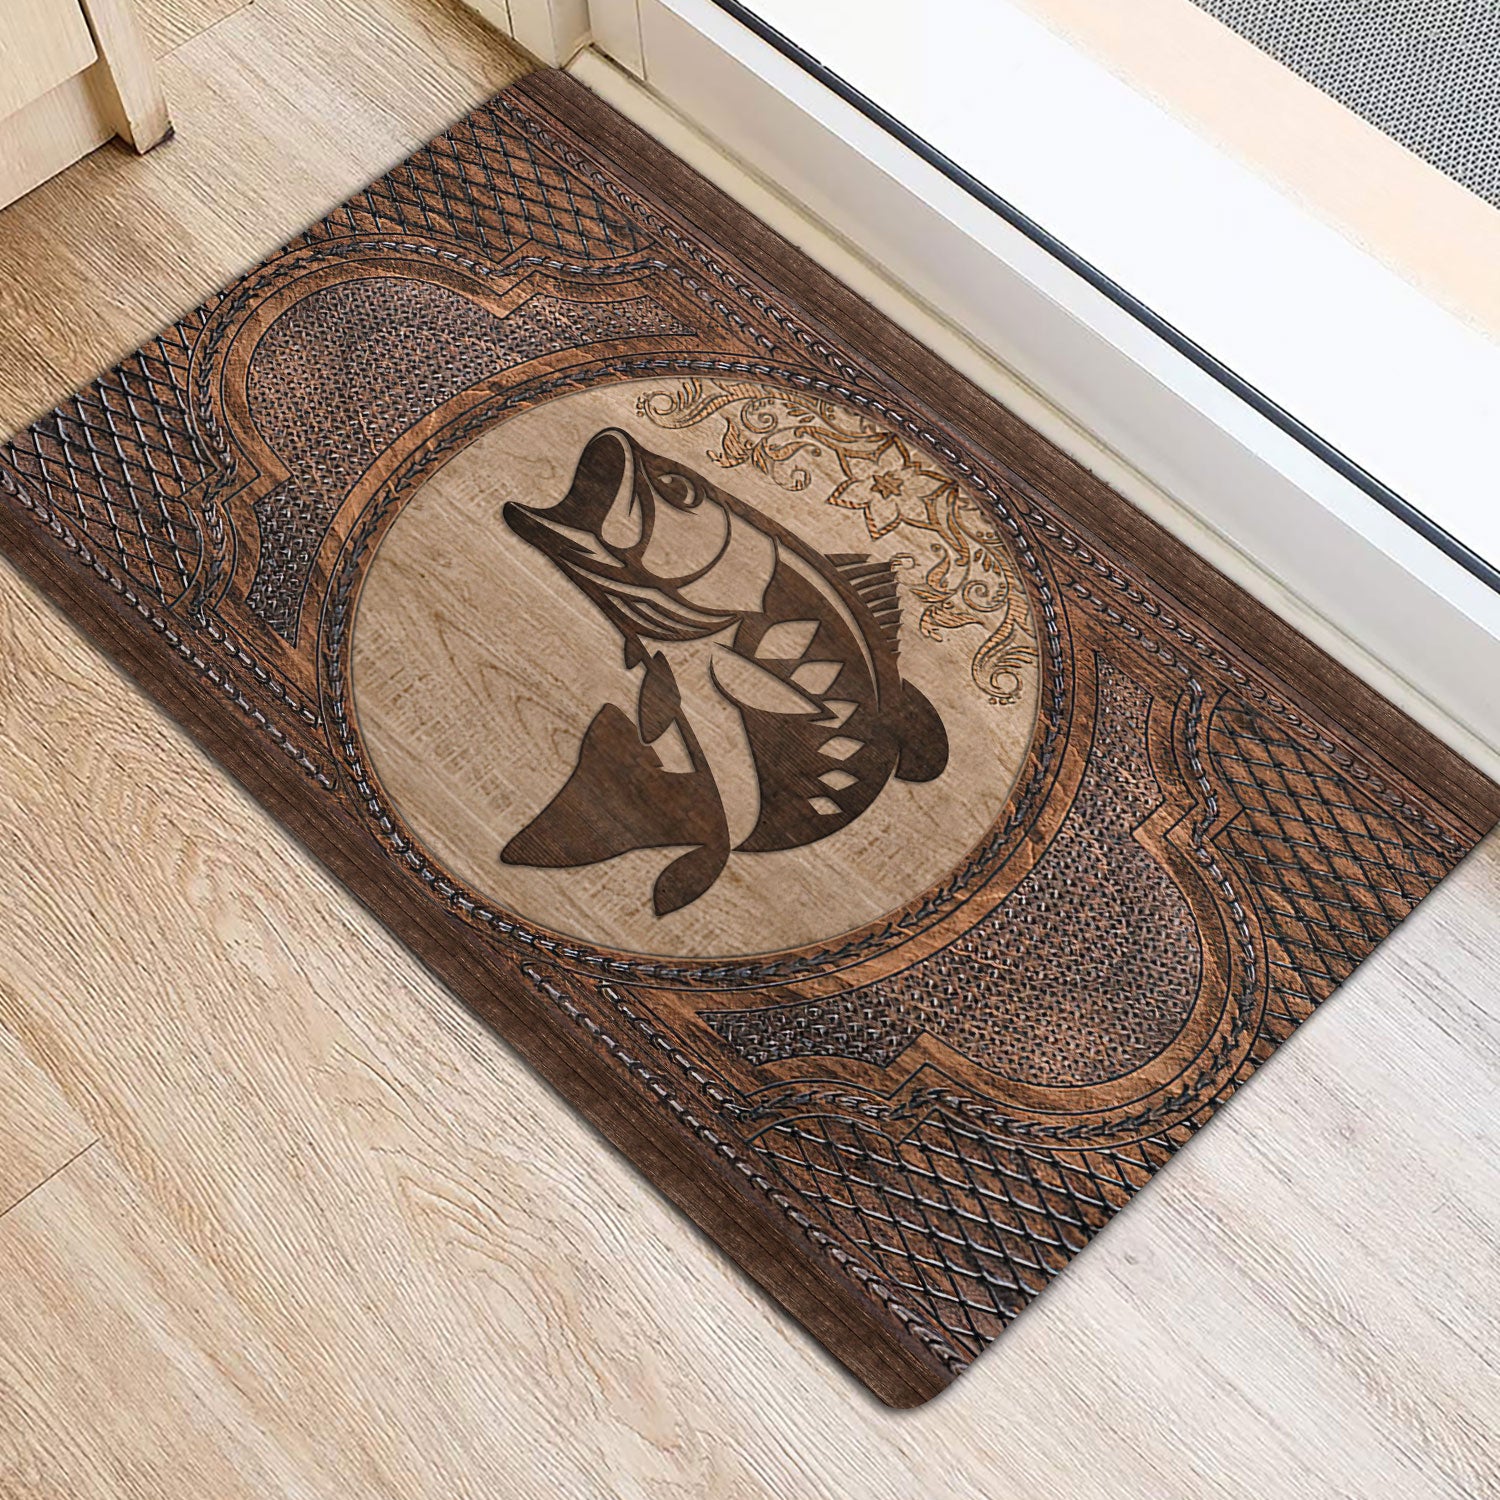 Ohaprints-Doormat-Outdoor-Indoor-Fishing-Fisherman-Sculpture-Wood-Pattern-Rubber-Door-Mat-63-